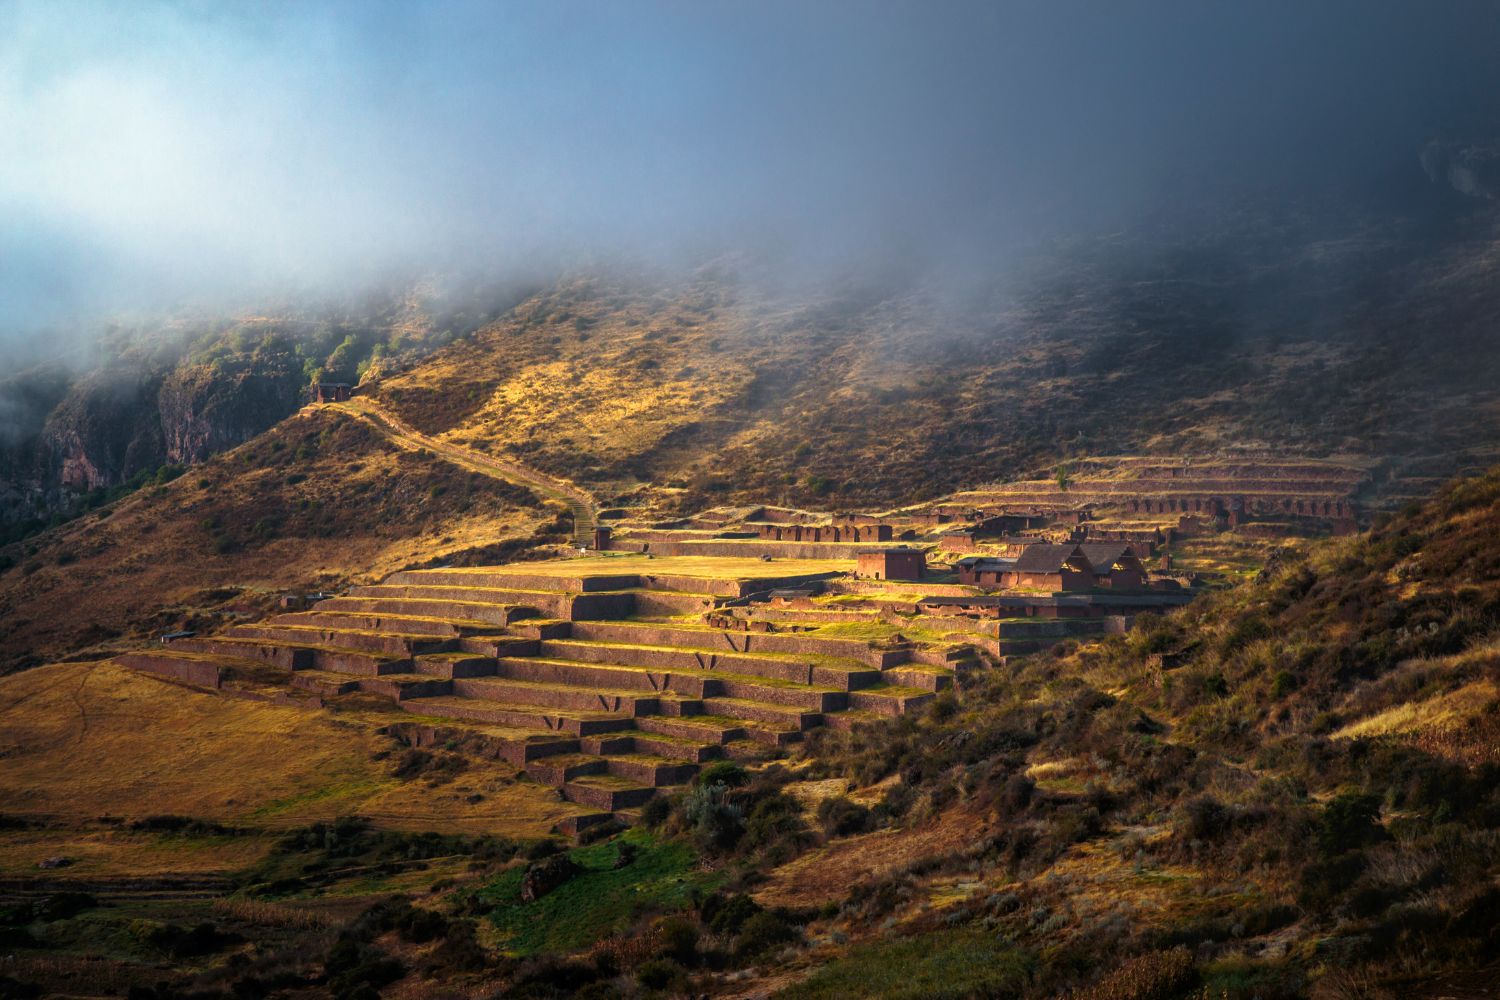 Huchuy Qosqo Wanderung nach Machu Picchu